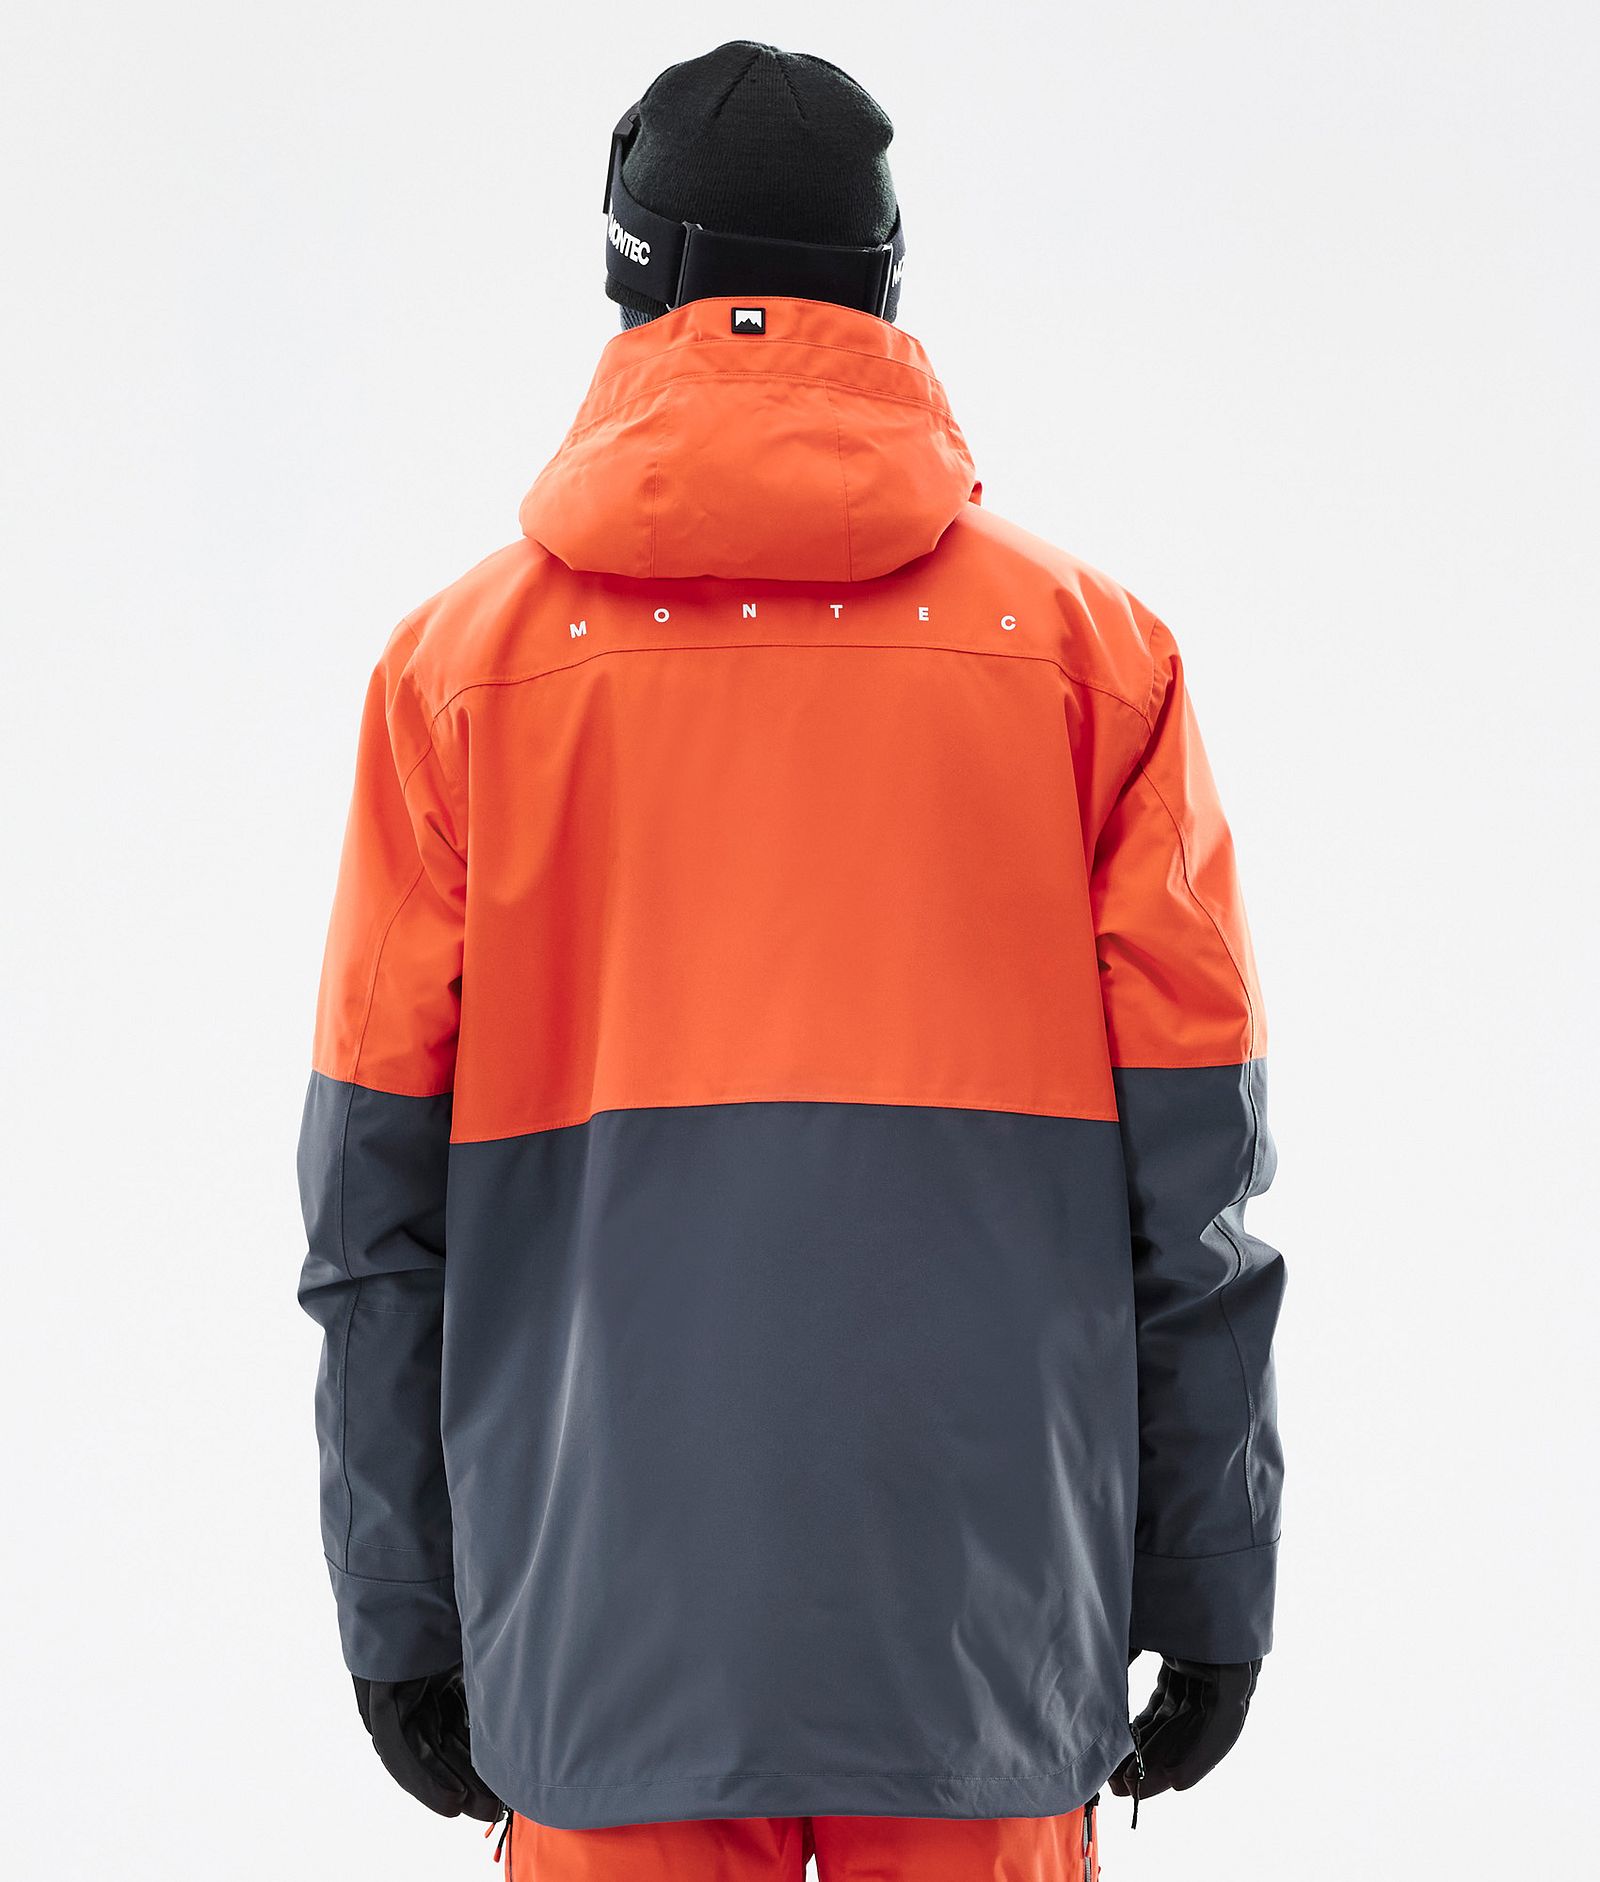 Dune Ski Jacket Men Orange/Black/Metal Blue, Image 7 of 9